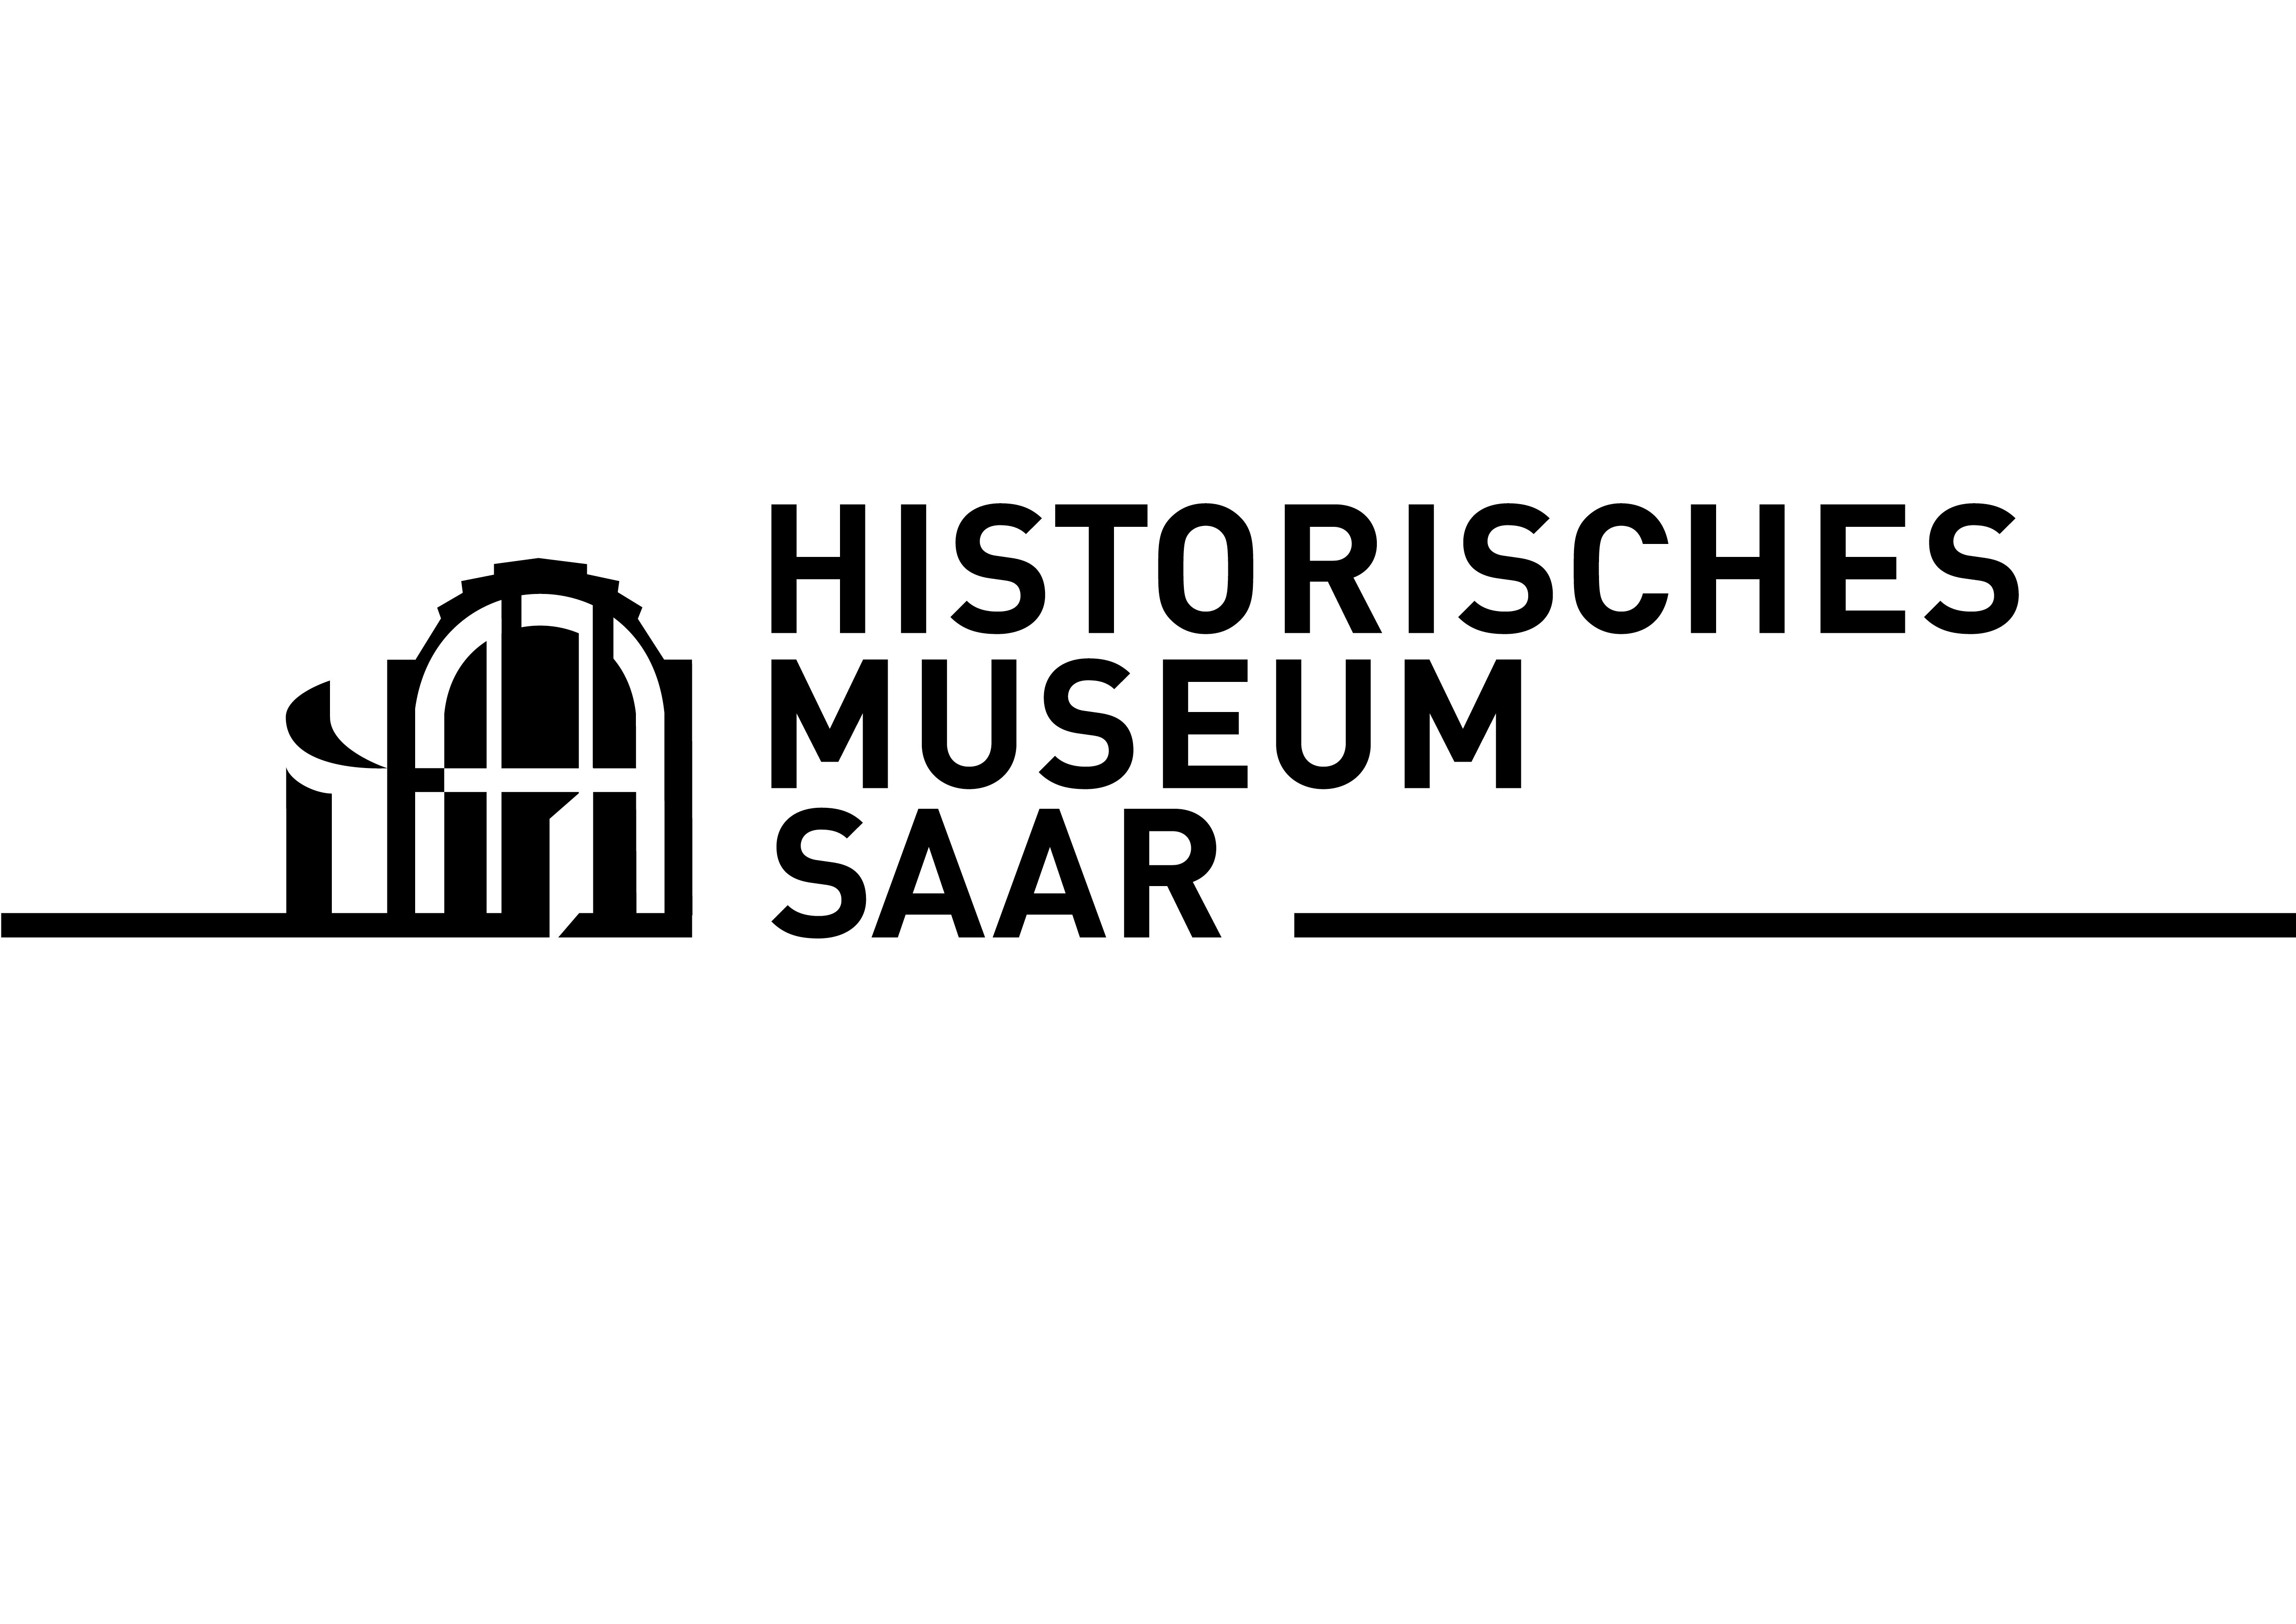 Museen im Saarland - Objekt - Elektrischer Kompressor/Hubkolbenverdichter